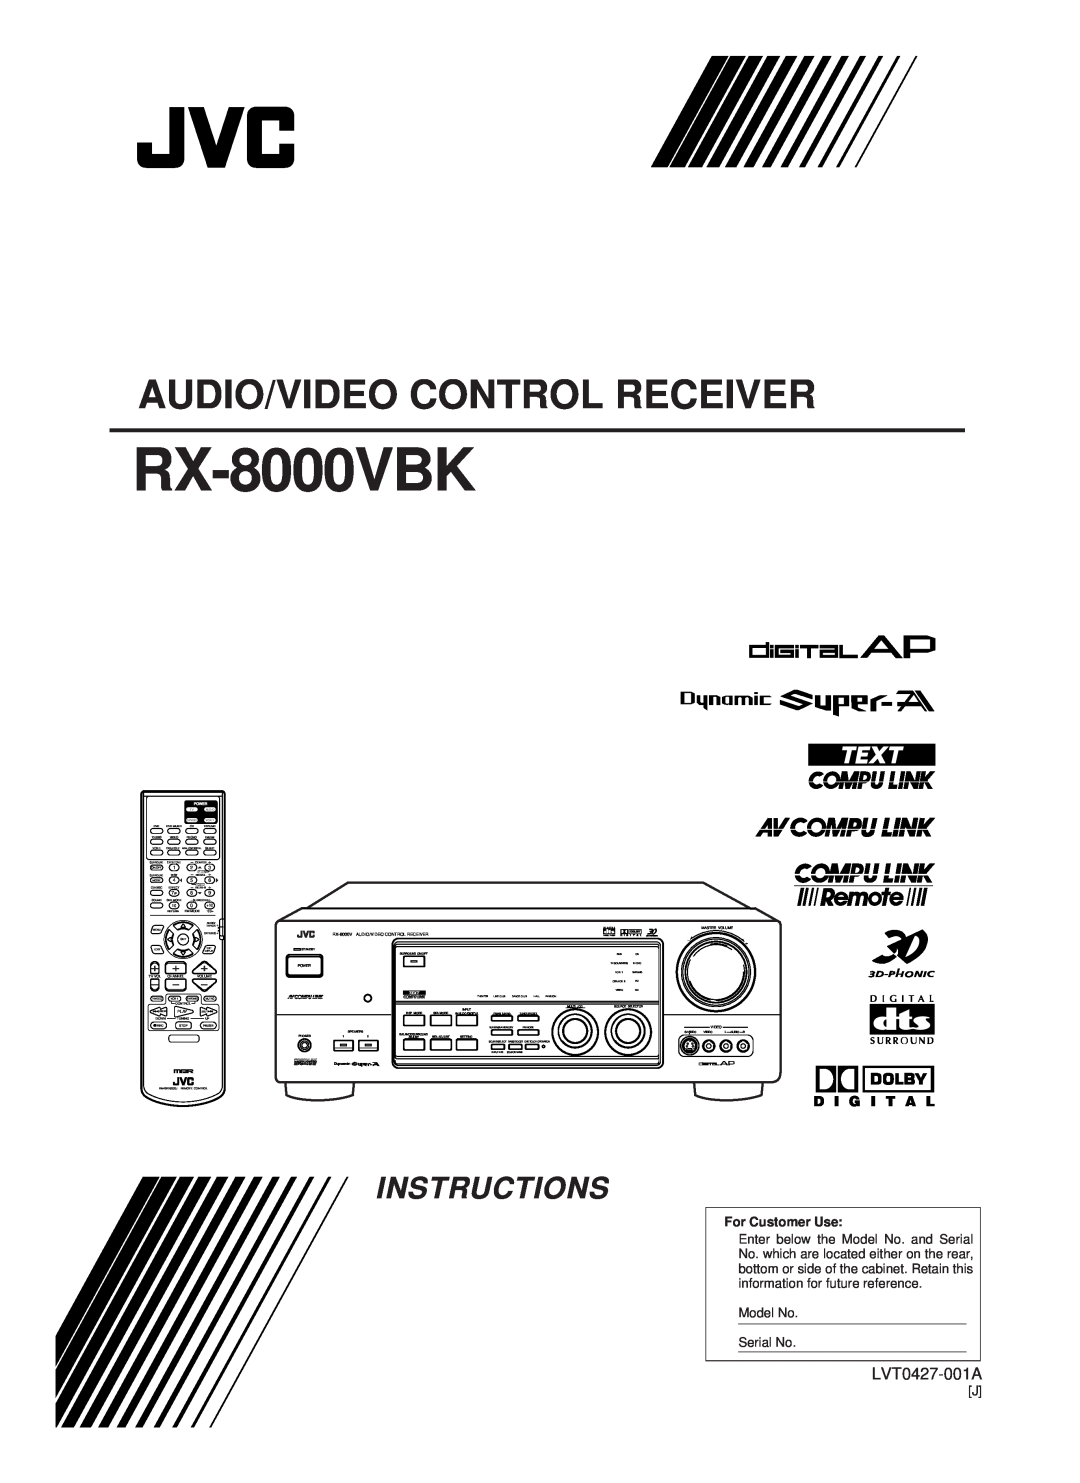 JVC RX-8000VBK manual Audio/Video Control Receiver, Instructions, LVT0427-001A, D I G I T A L, For Customer Use 